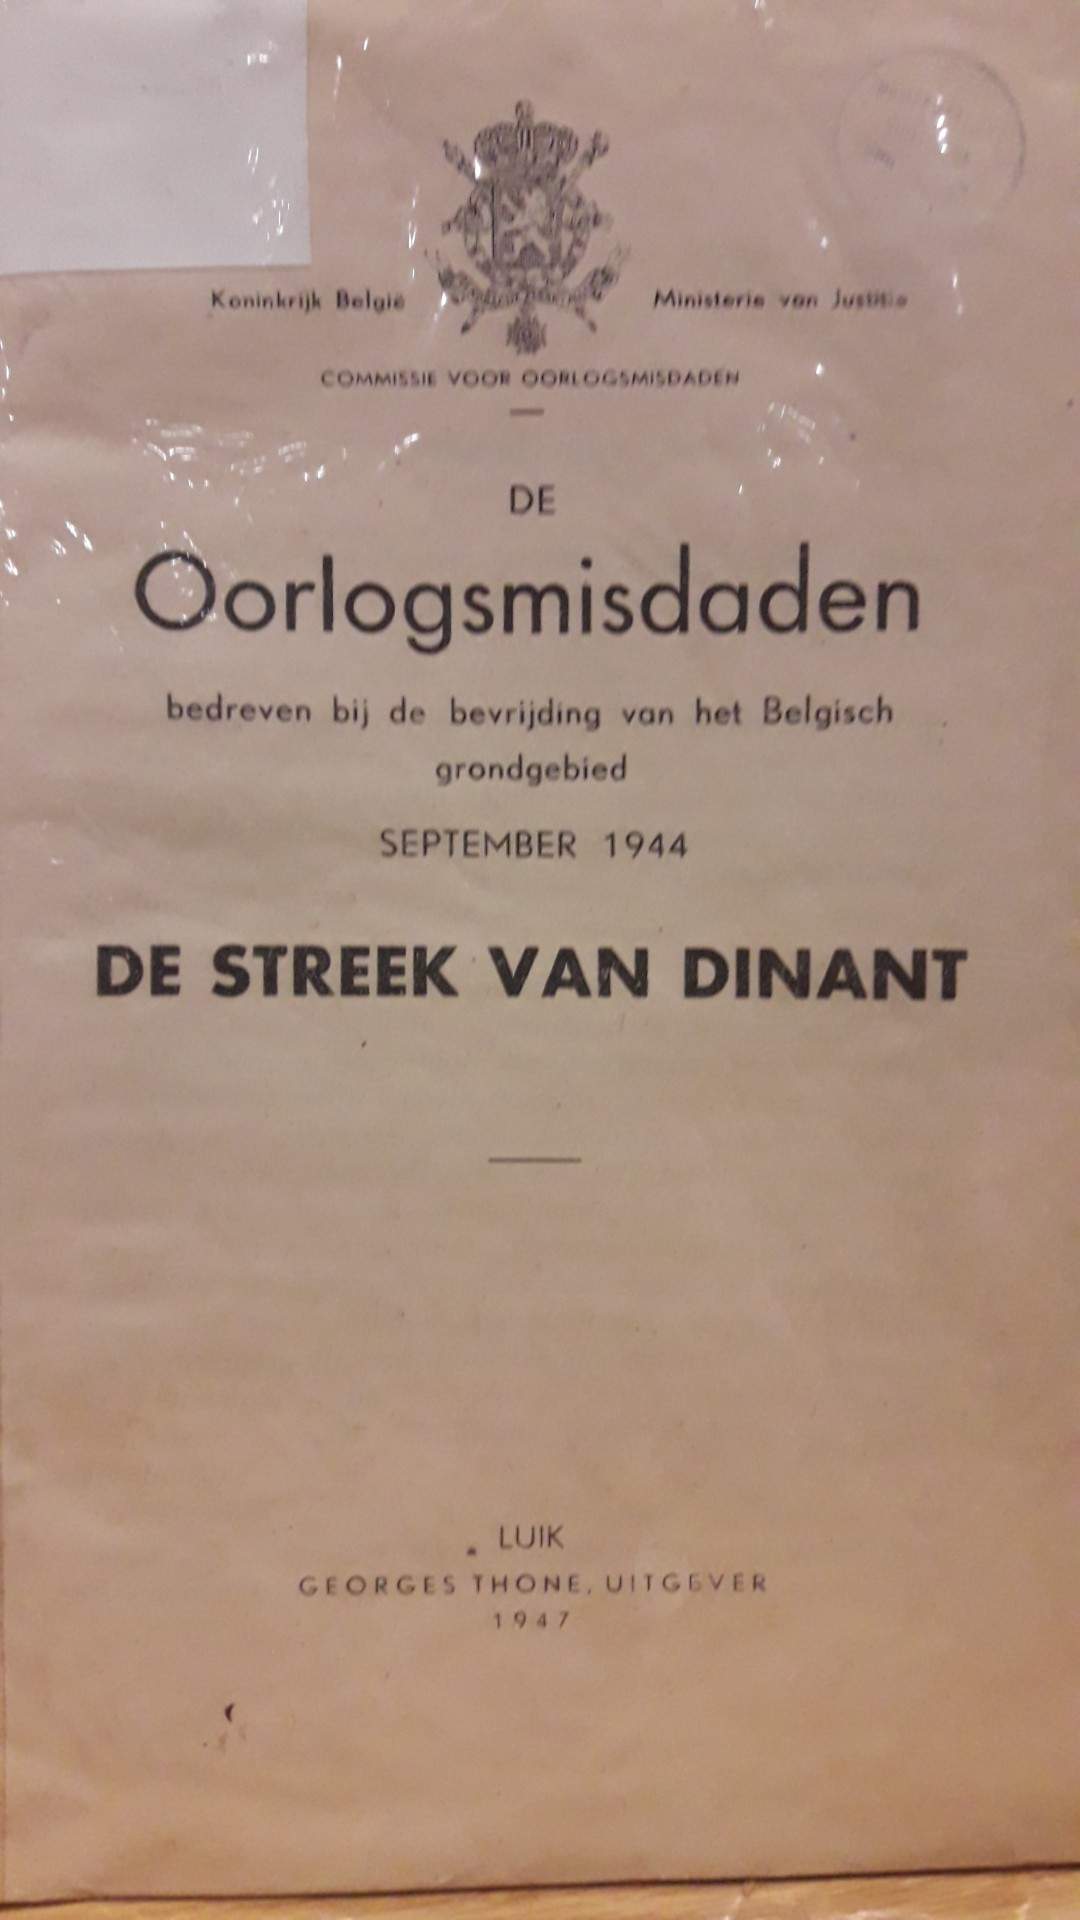 De oorlogsmisdaden september 1944 in de streek van Dinant / uitgave 1947 - 52 blz